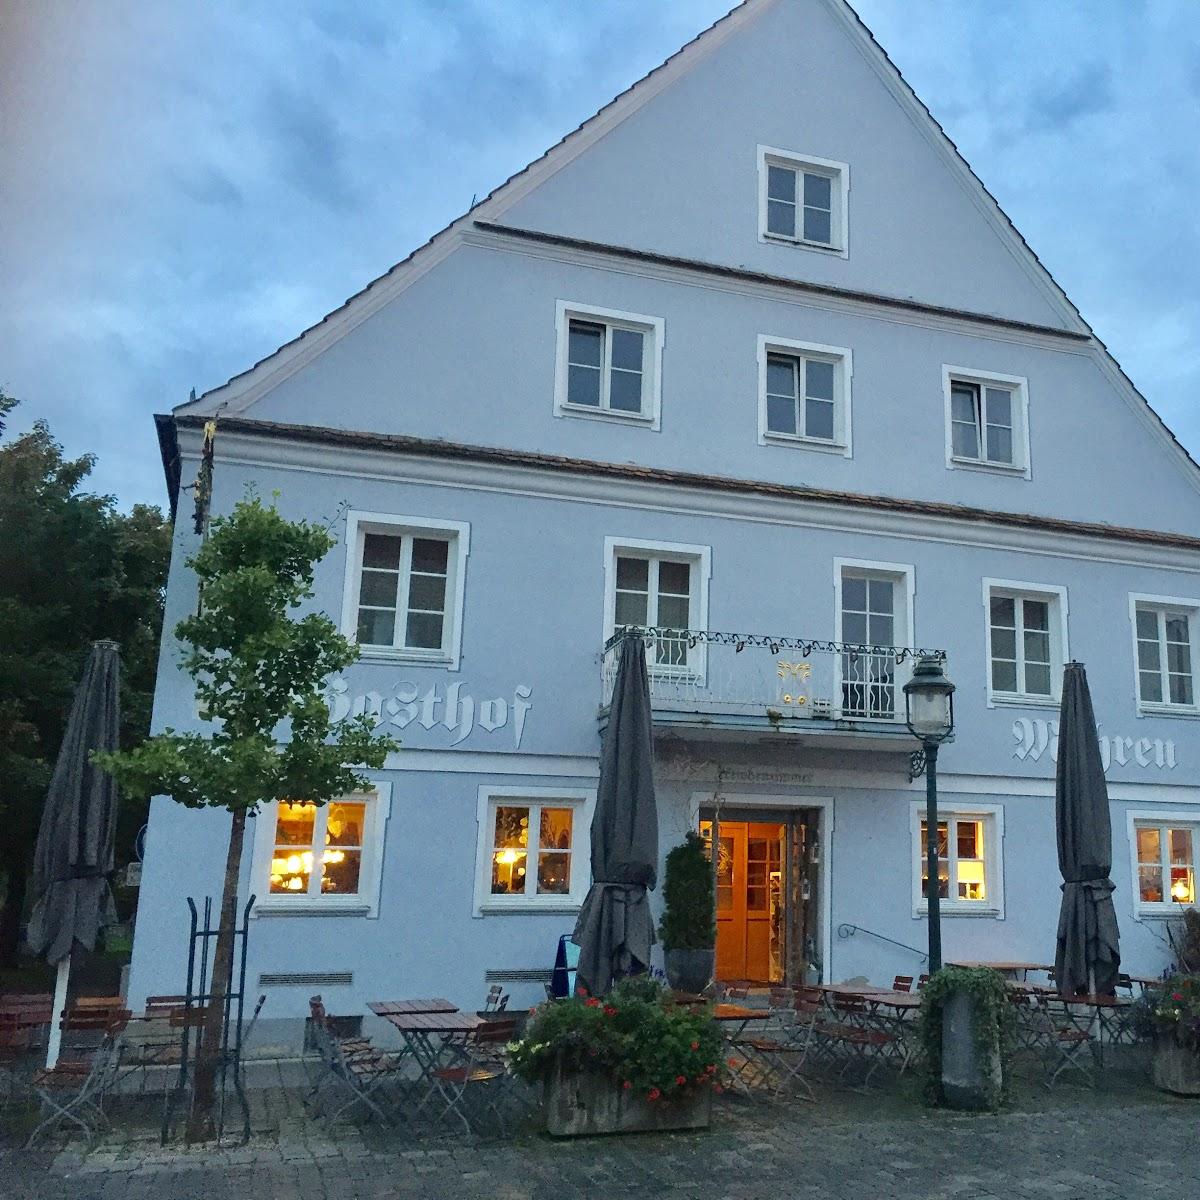 Restaurant "Gasthof Zum Mohren" in  Ottobeuren